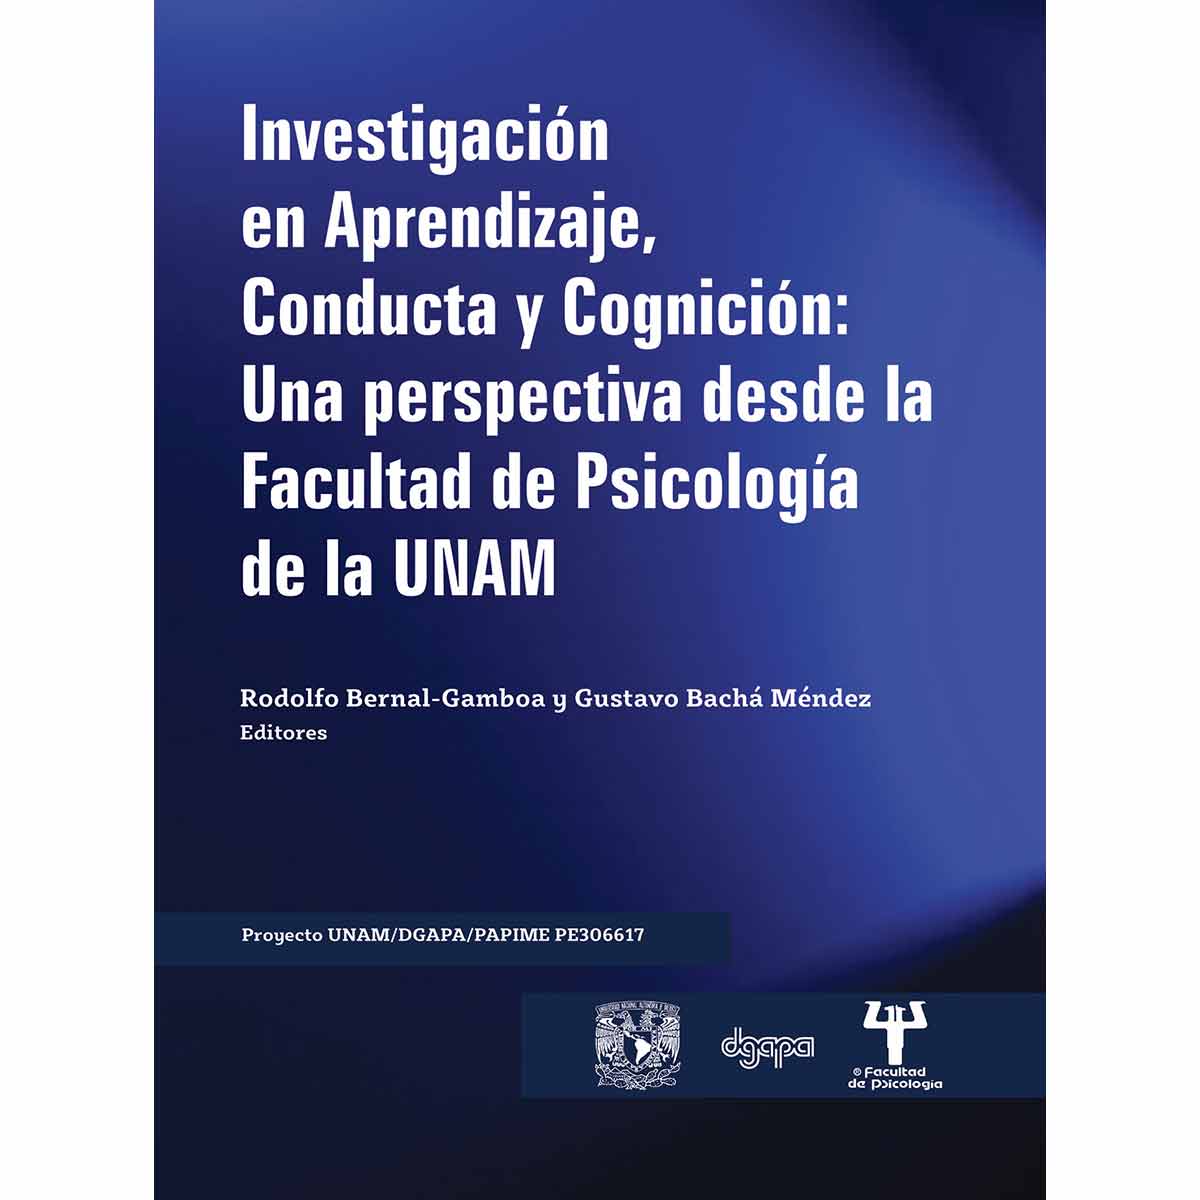 INVESTIGACIÓN EN APRENDIZAJE, CONDUCTA Y COGNICIÓN: UNA PERSPECTIVA DESDE LA FACULTAD DE PSICOLOGÍA DE LA UNAM